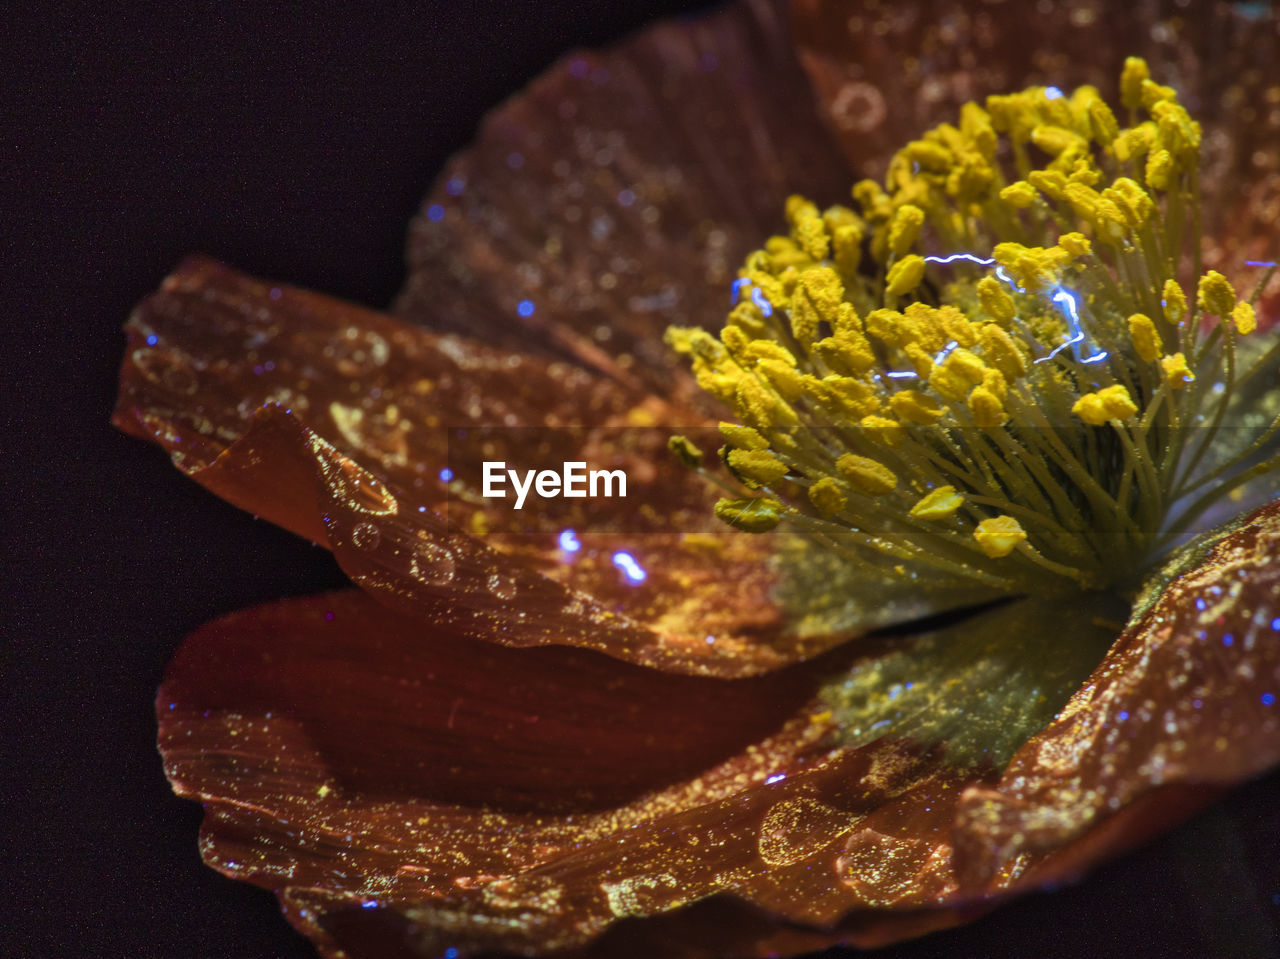 Close up of a papaver blossom under uv light